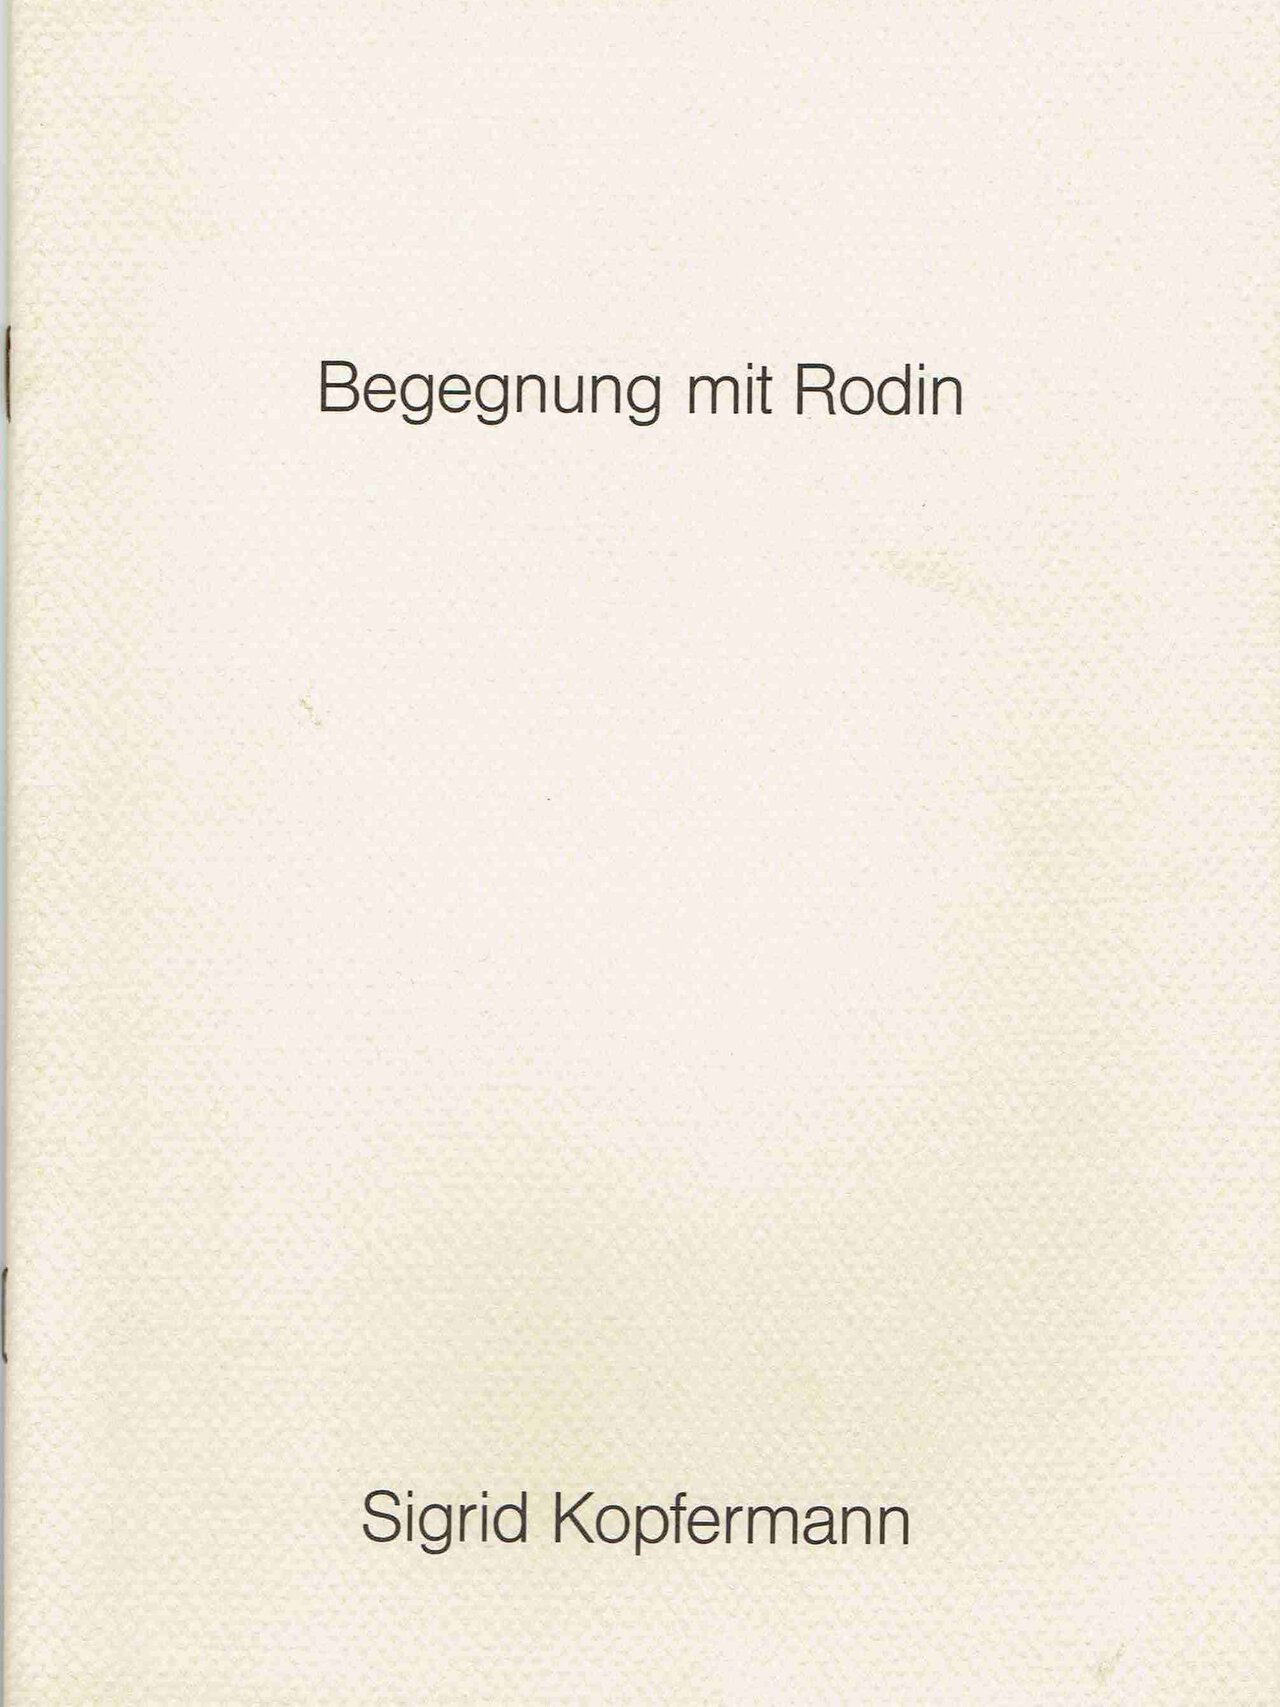 Begegnung mit Rodin - Sigrid Kopfermann